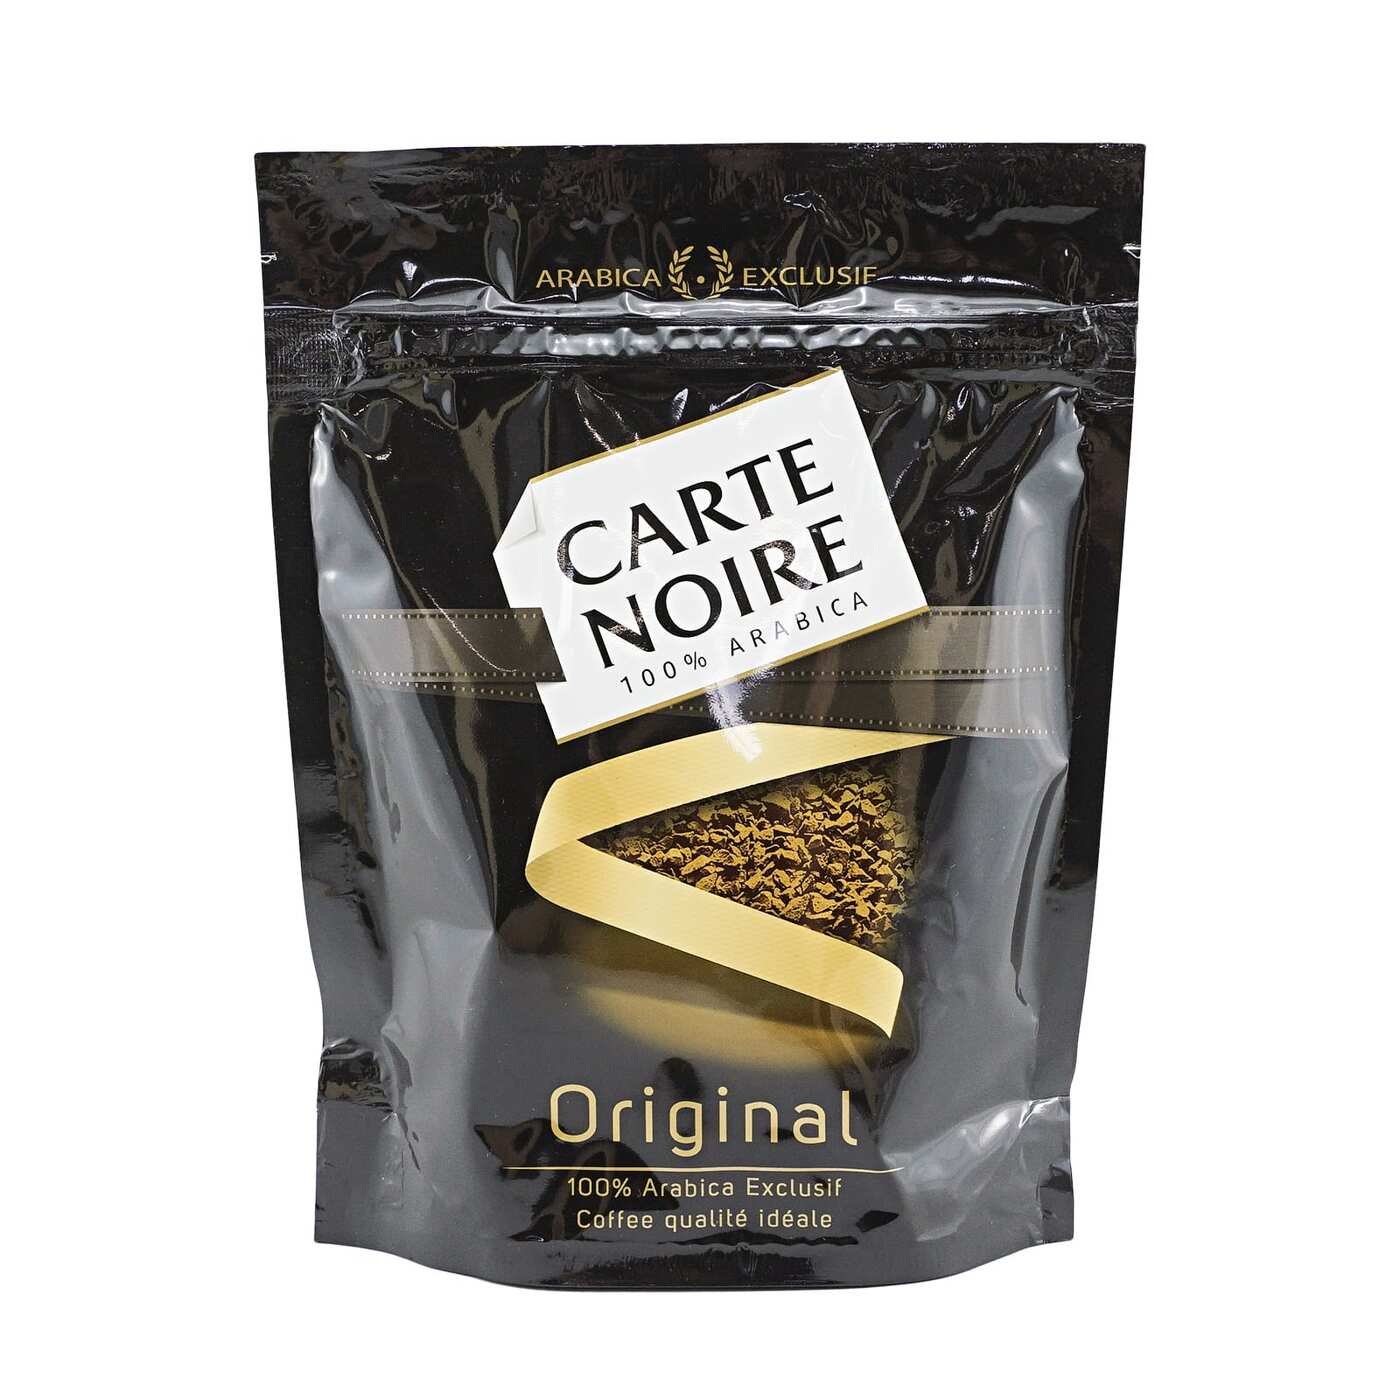 Carte noire (карт нуар) – джокер в кофейной колоде